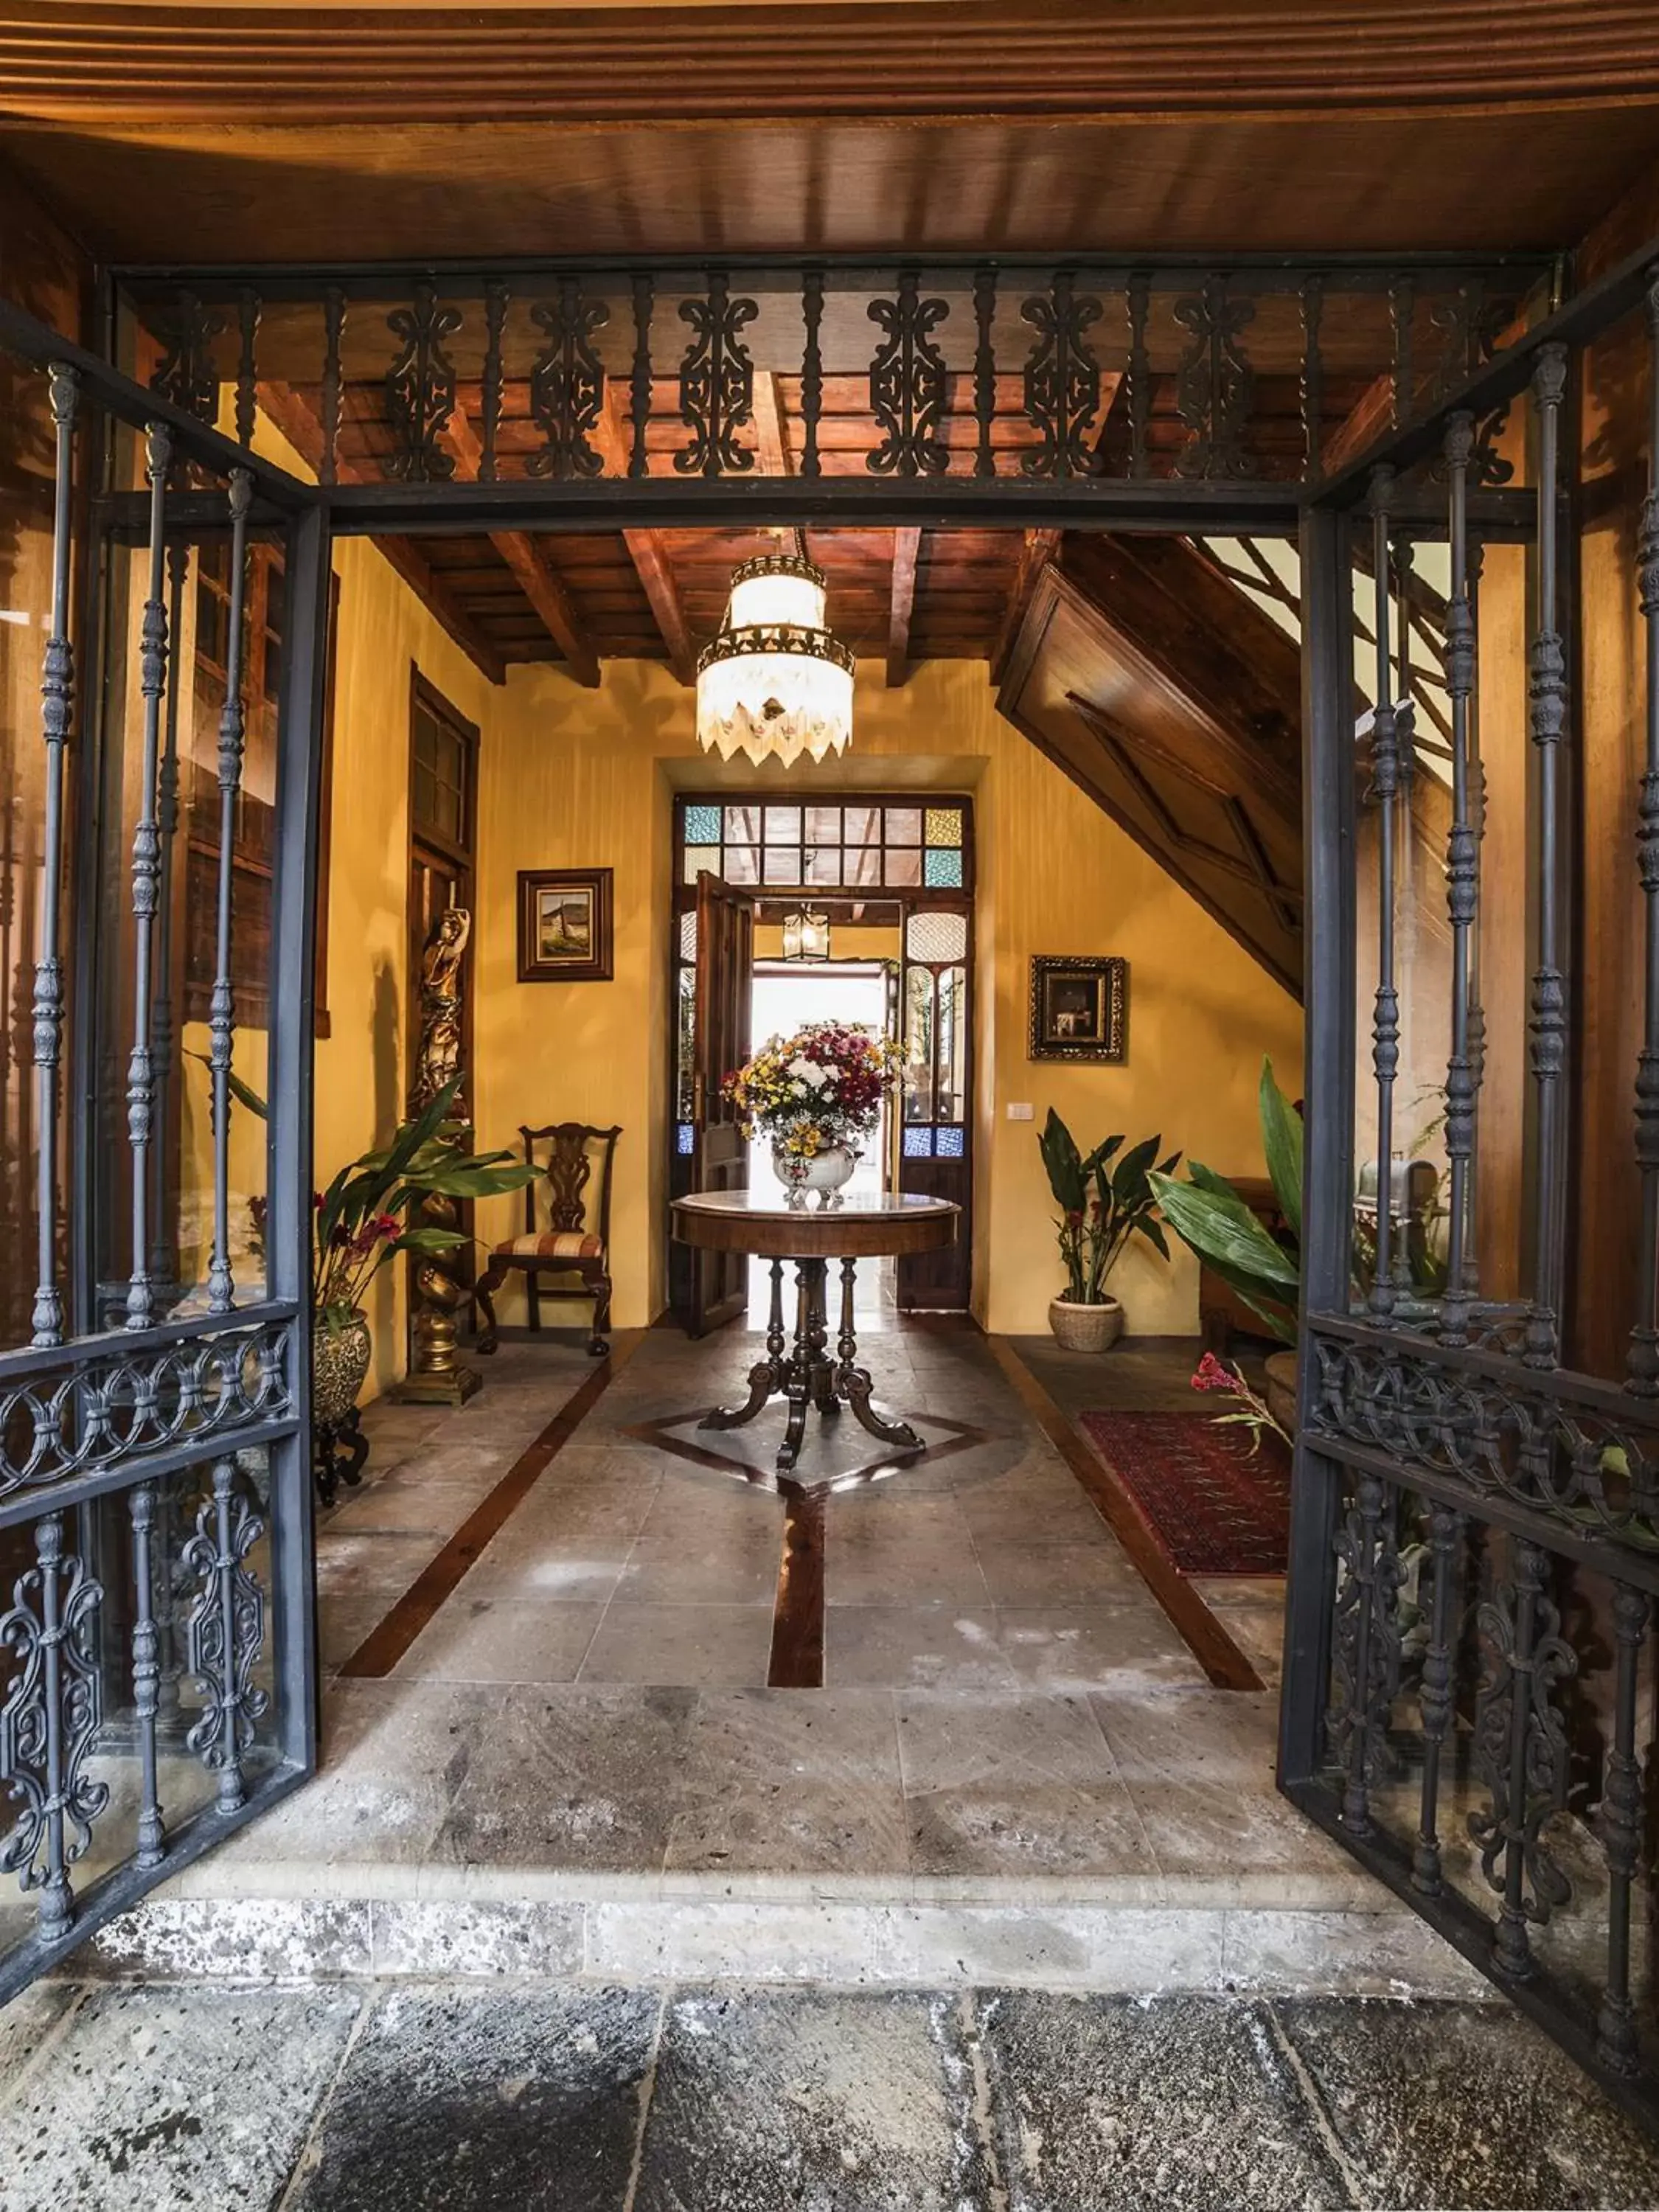 Lobby or reception in Hotel Emblemático San Marcos